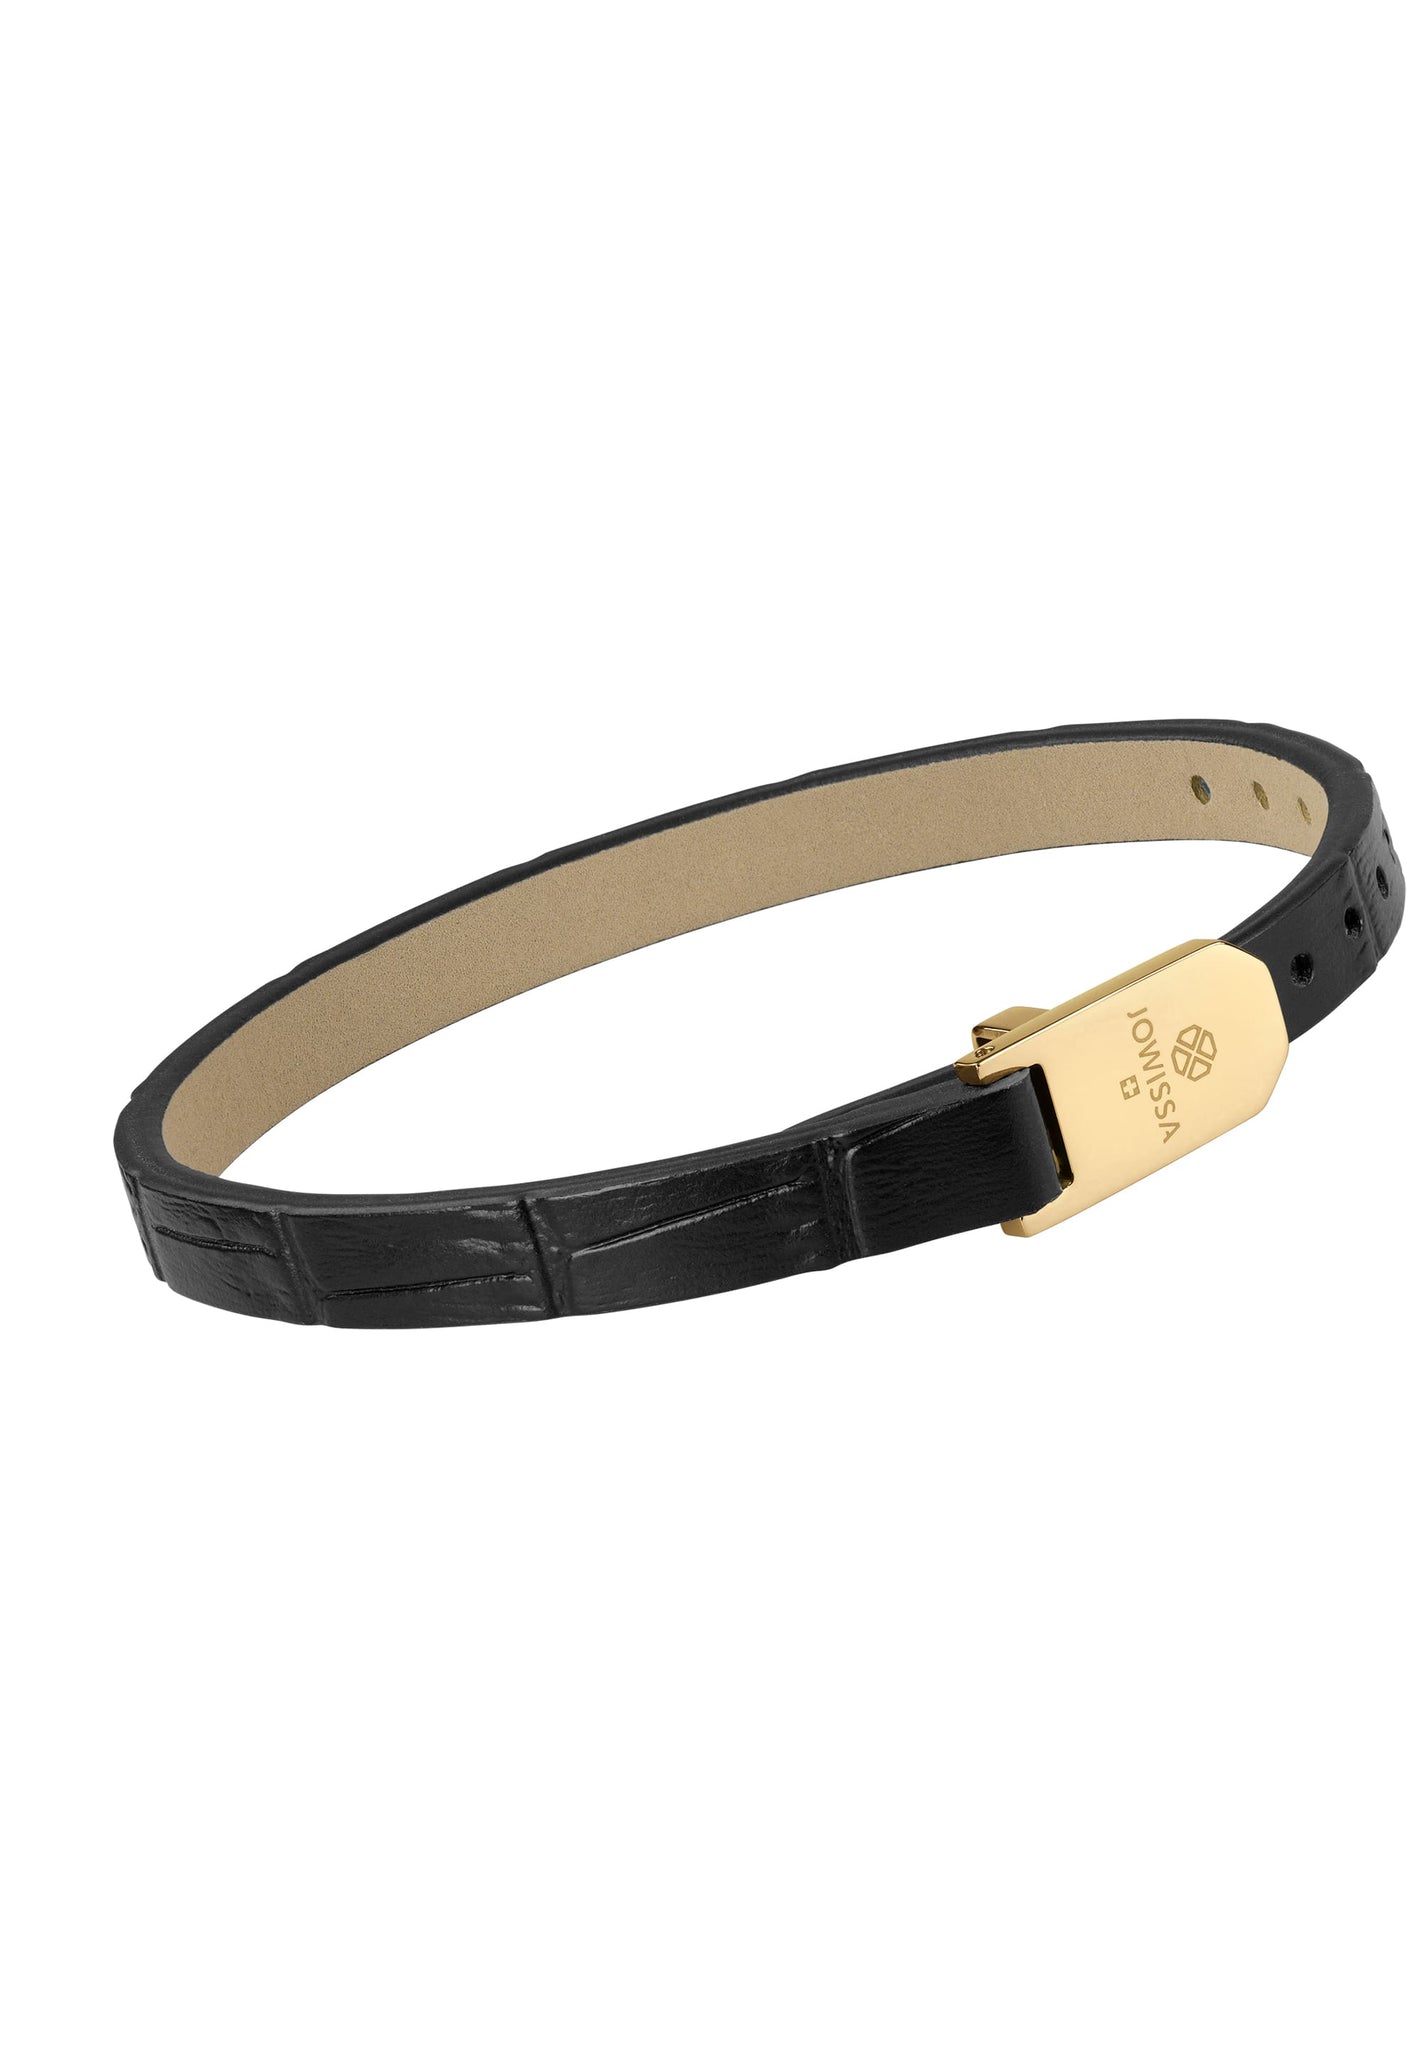 Bracelet de cuir croco mat Bracelet Cuir JS.0125